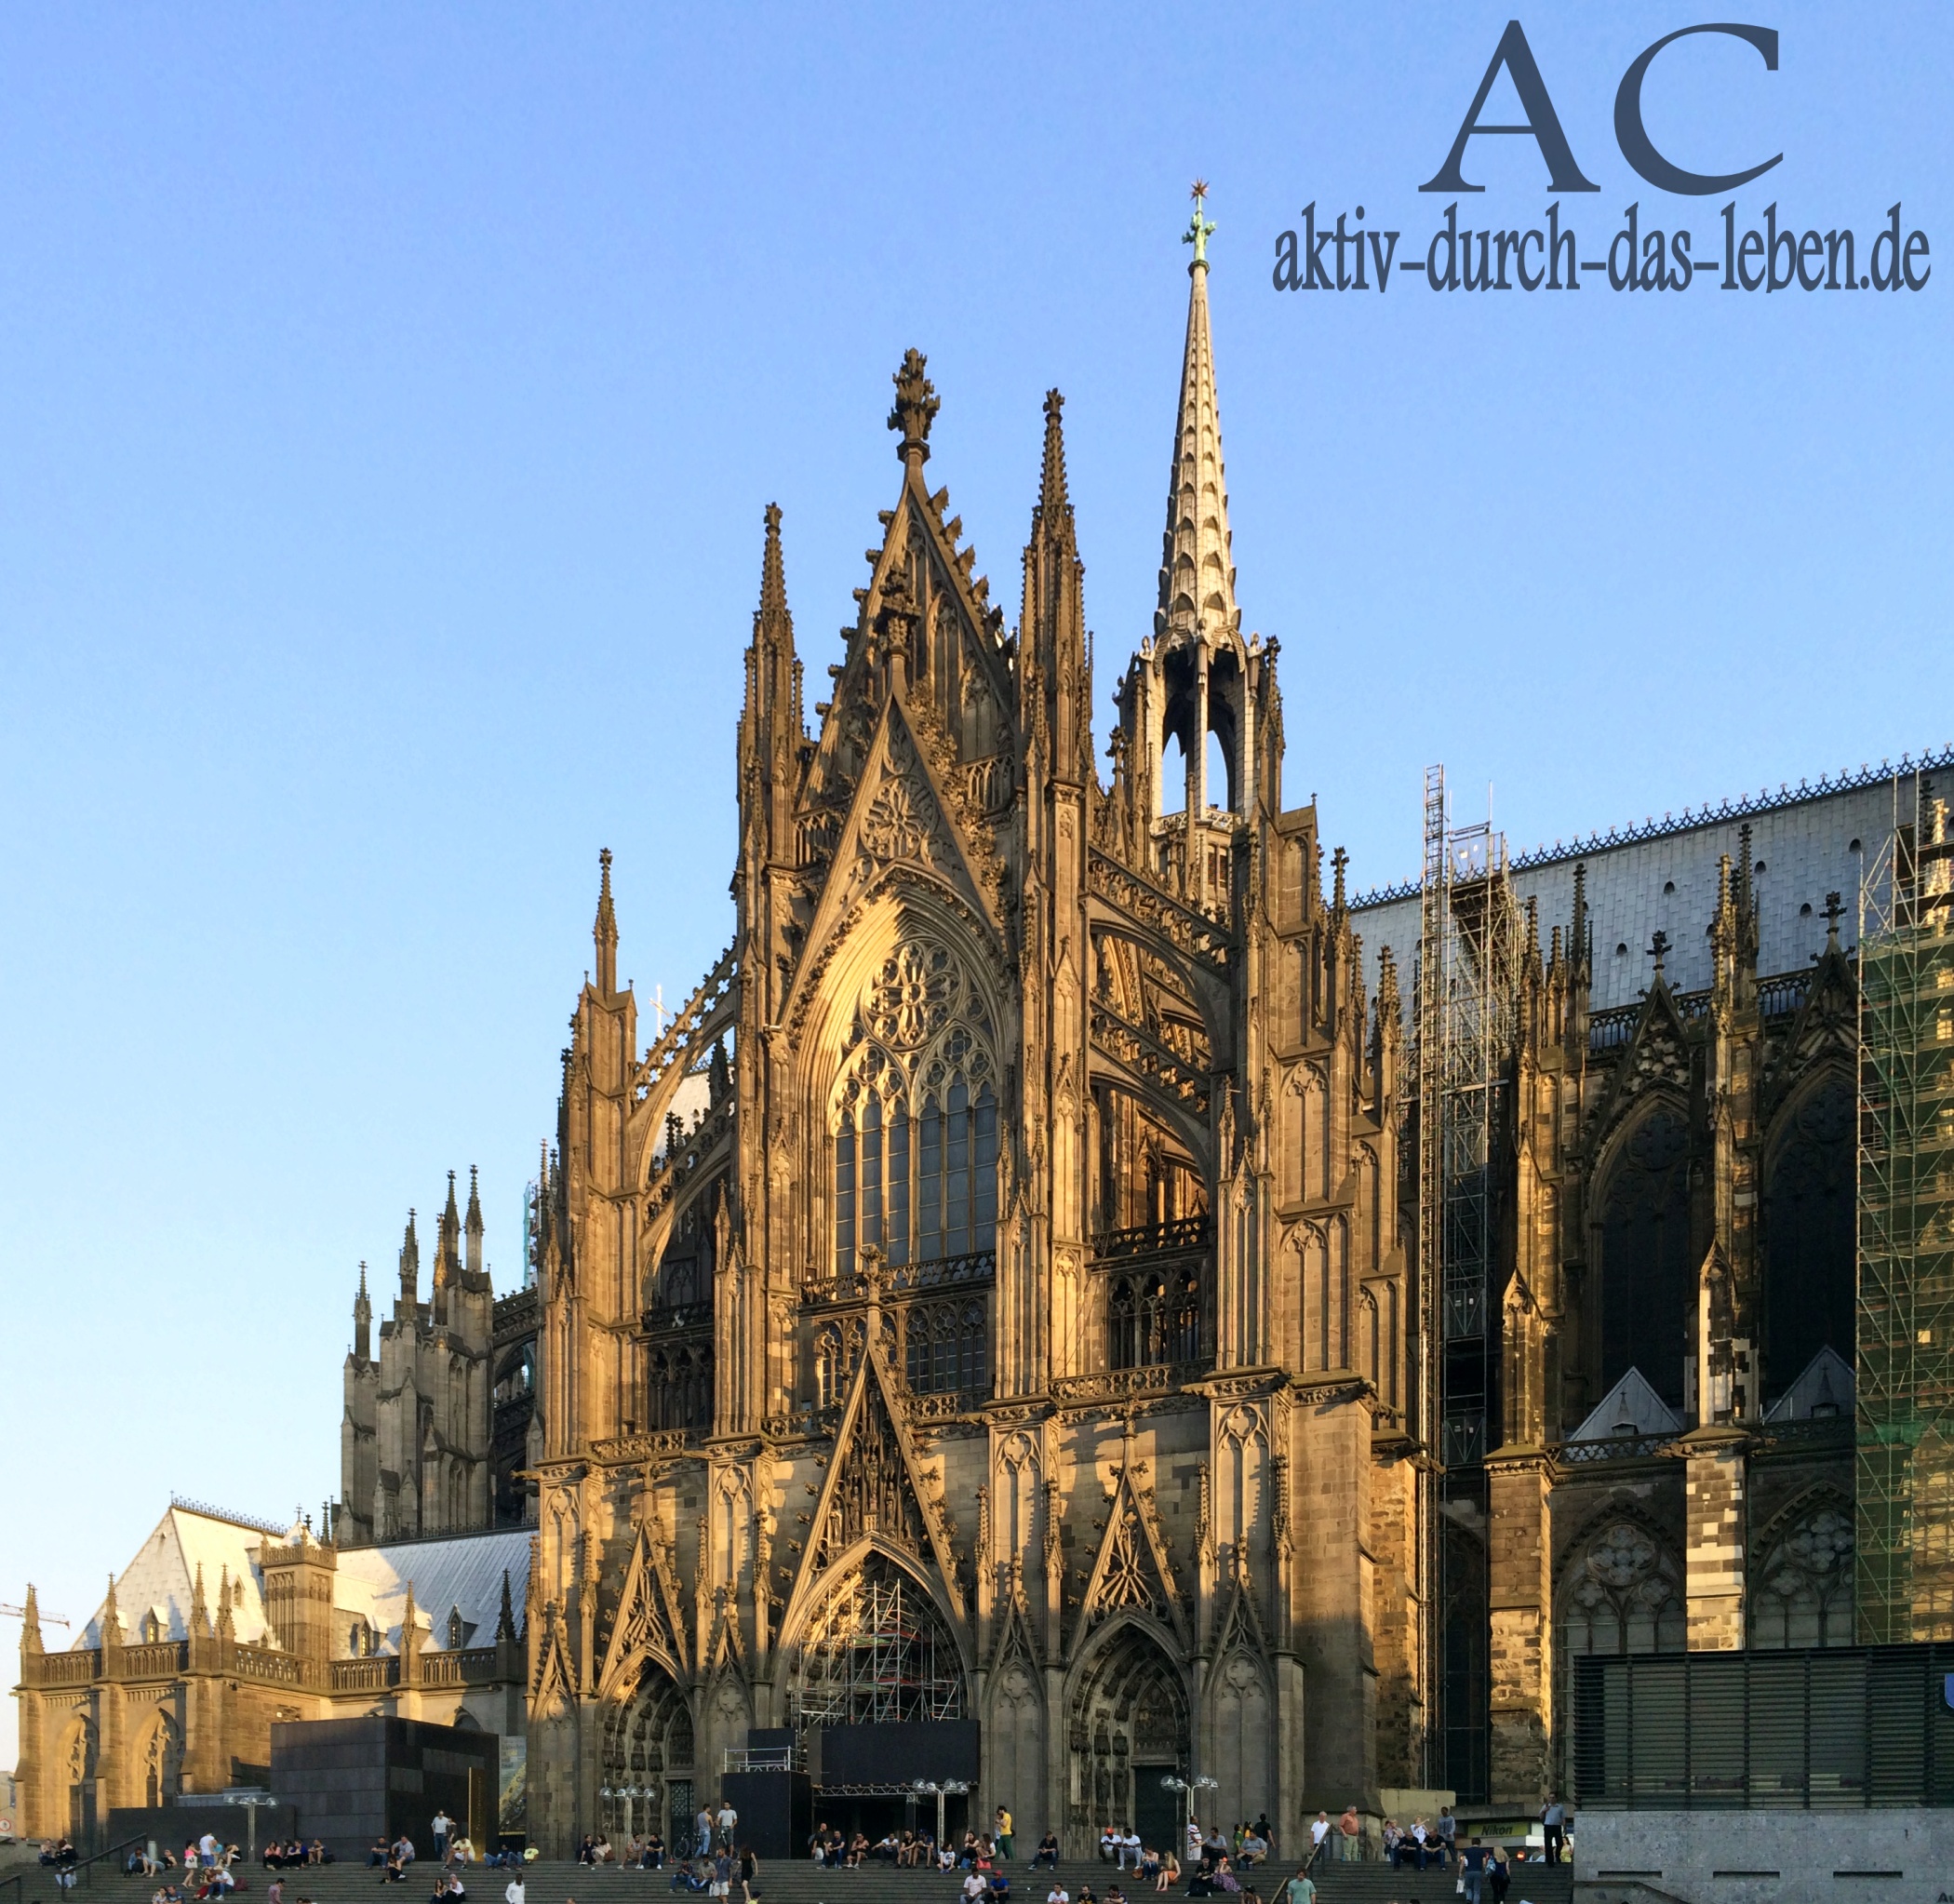 UNESCO-Weltkulturerbe Kölner Dom. Eine der weltweit größten Kathedrale im gotischen Baustil. 